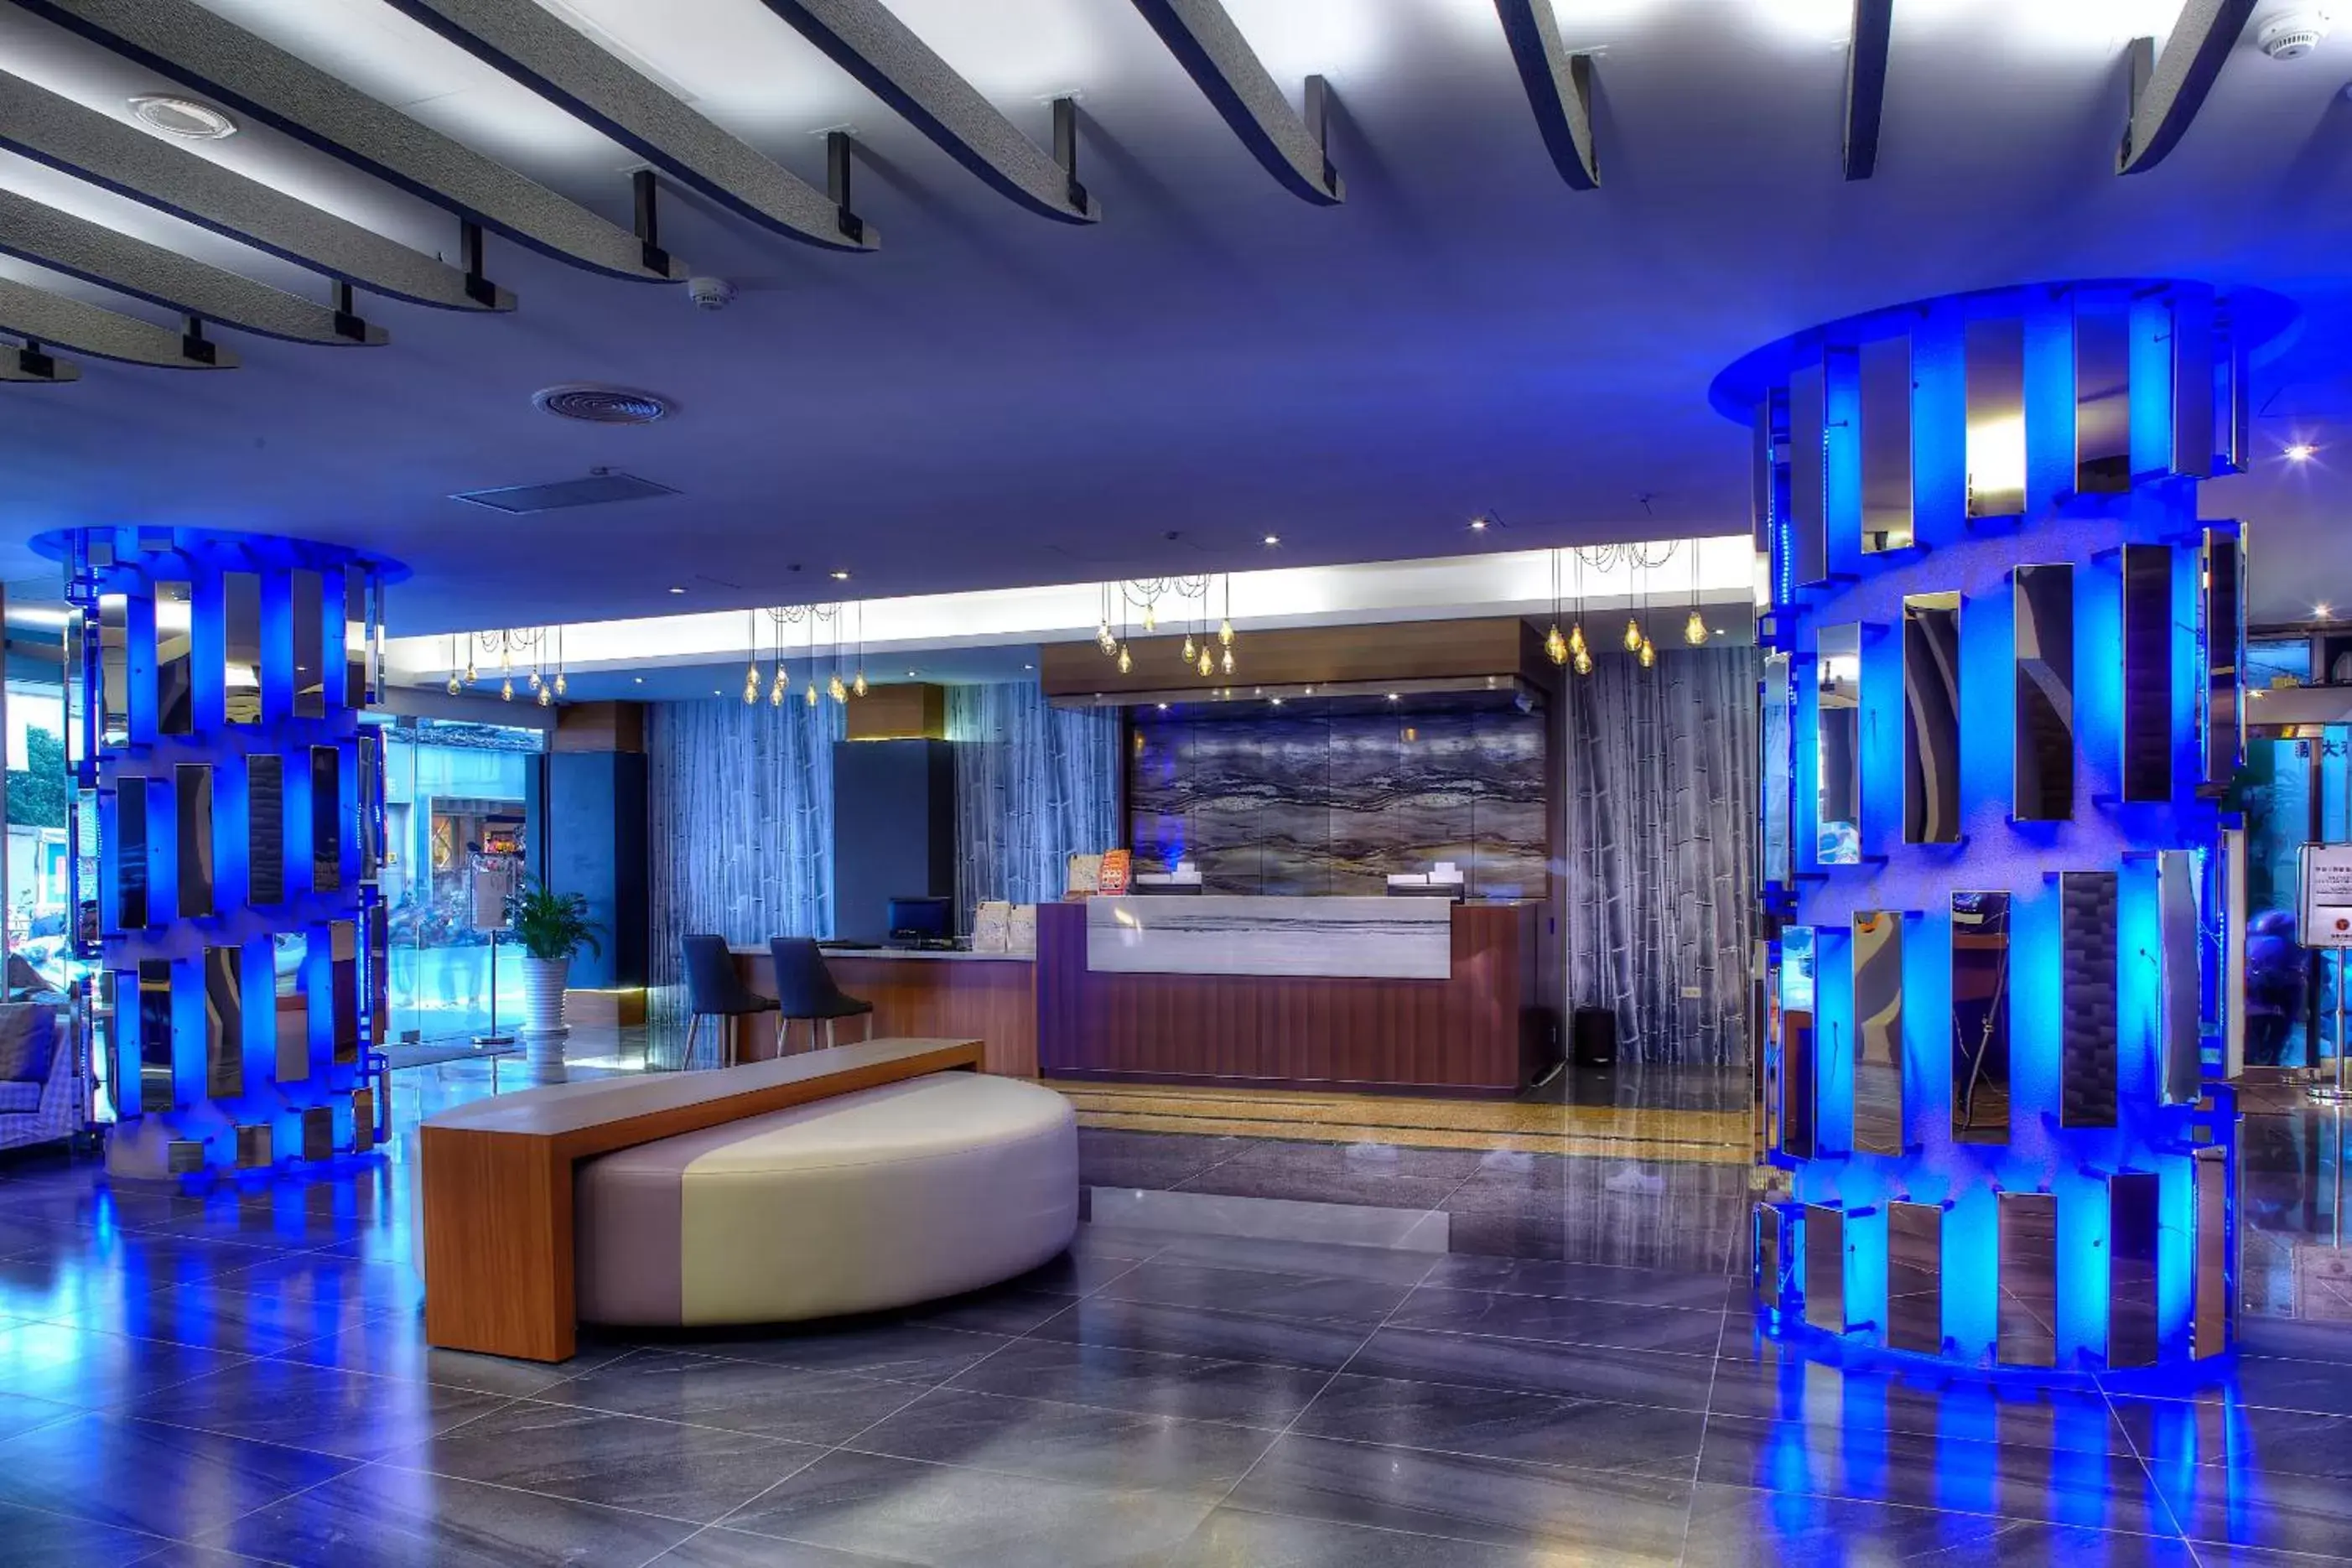 Lobby or reception, Lobby/Reception in Yuhao Hotel - Hsinchu Branch